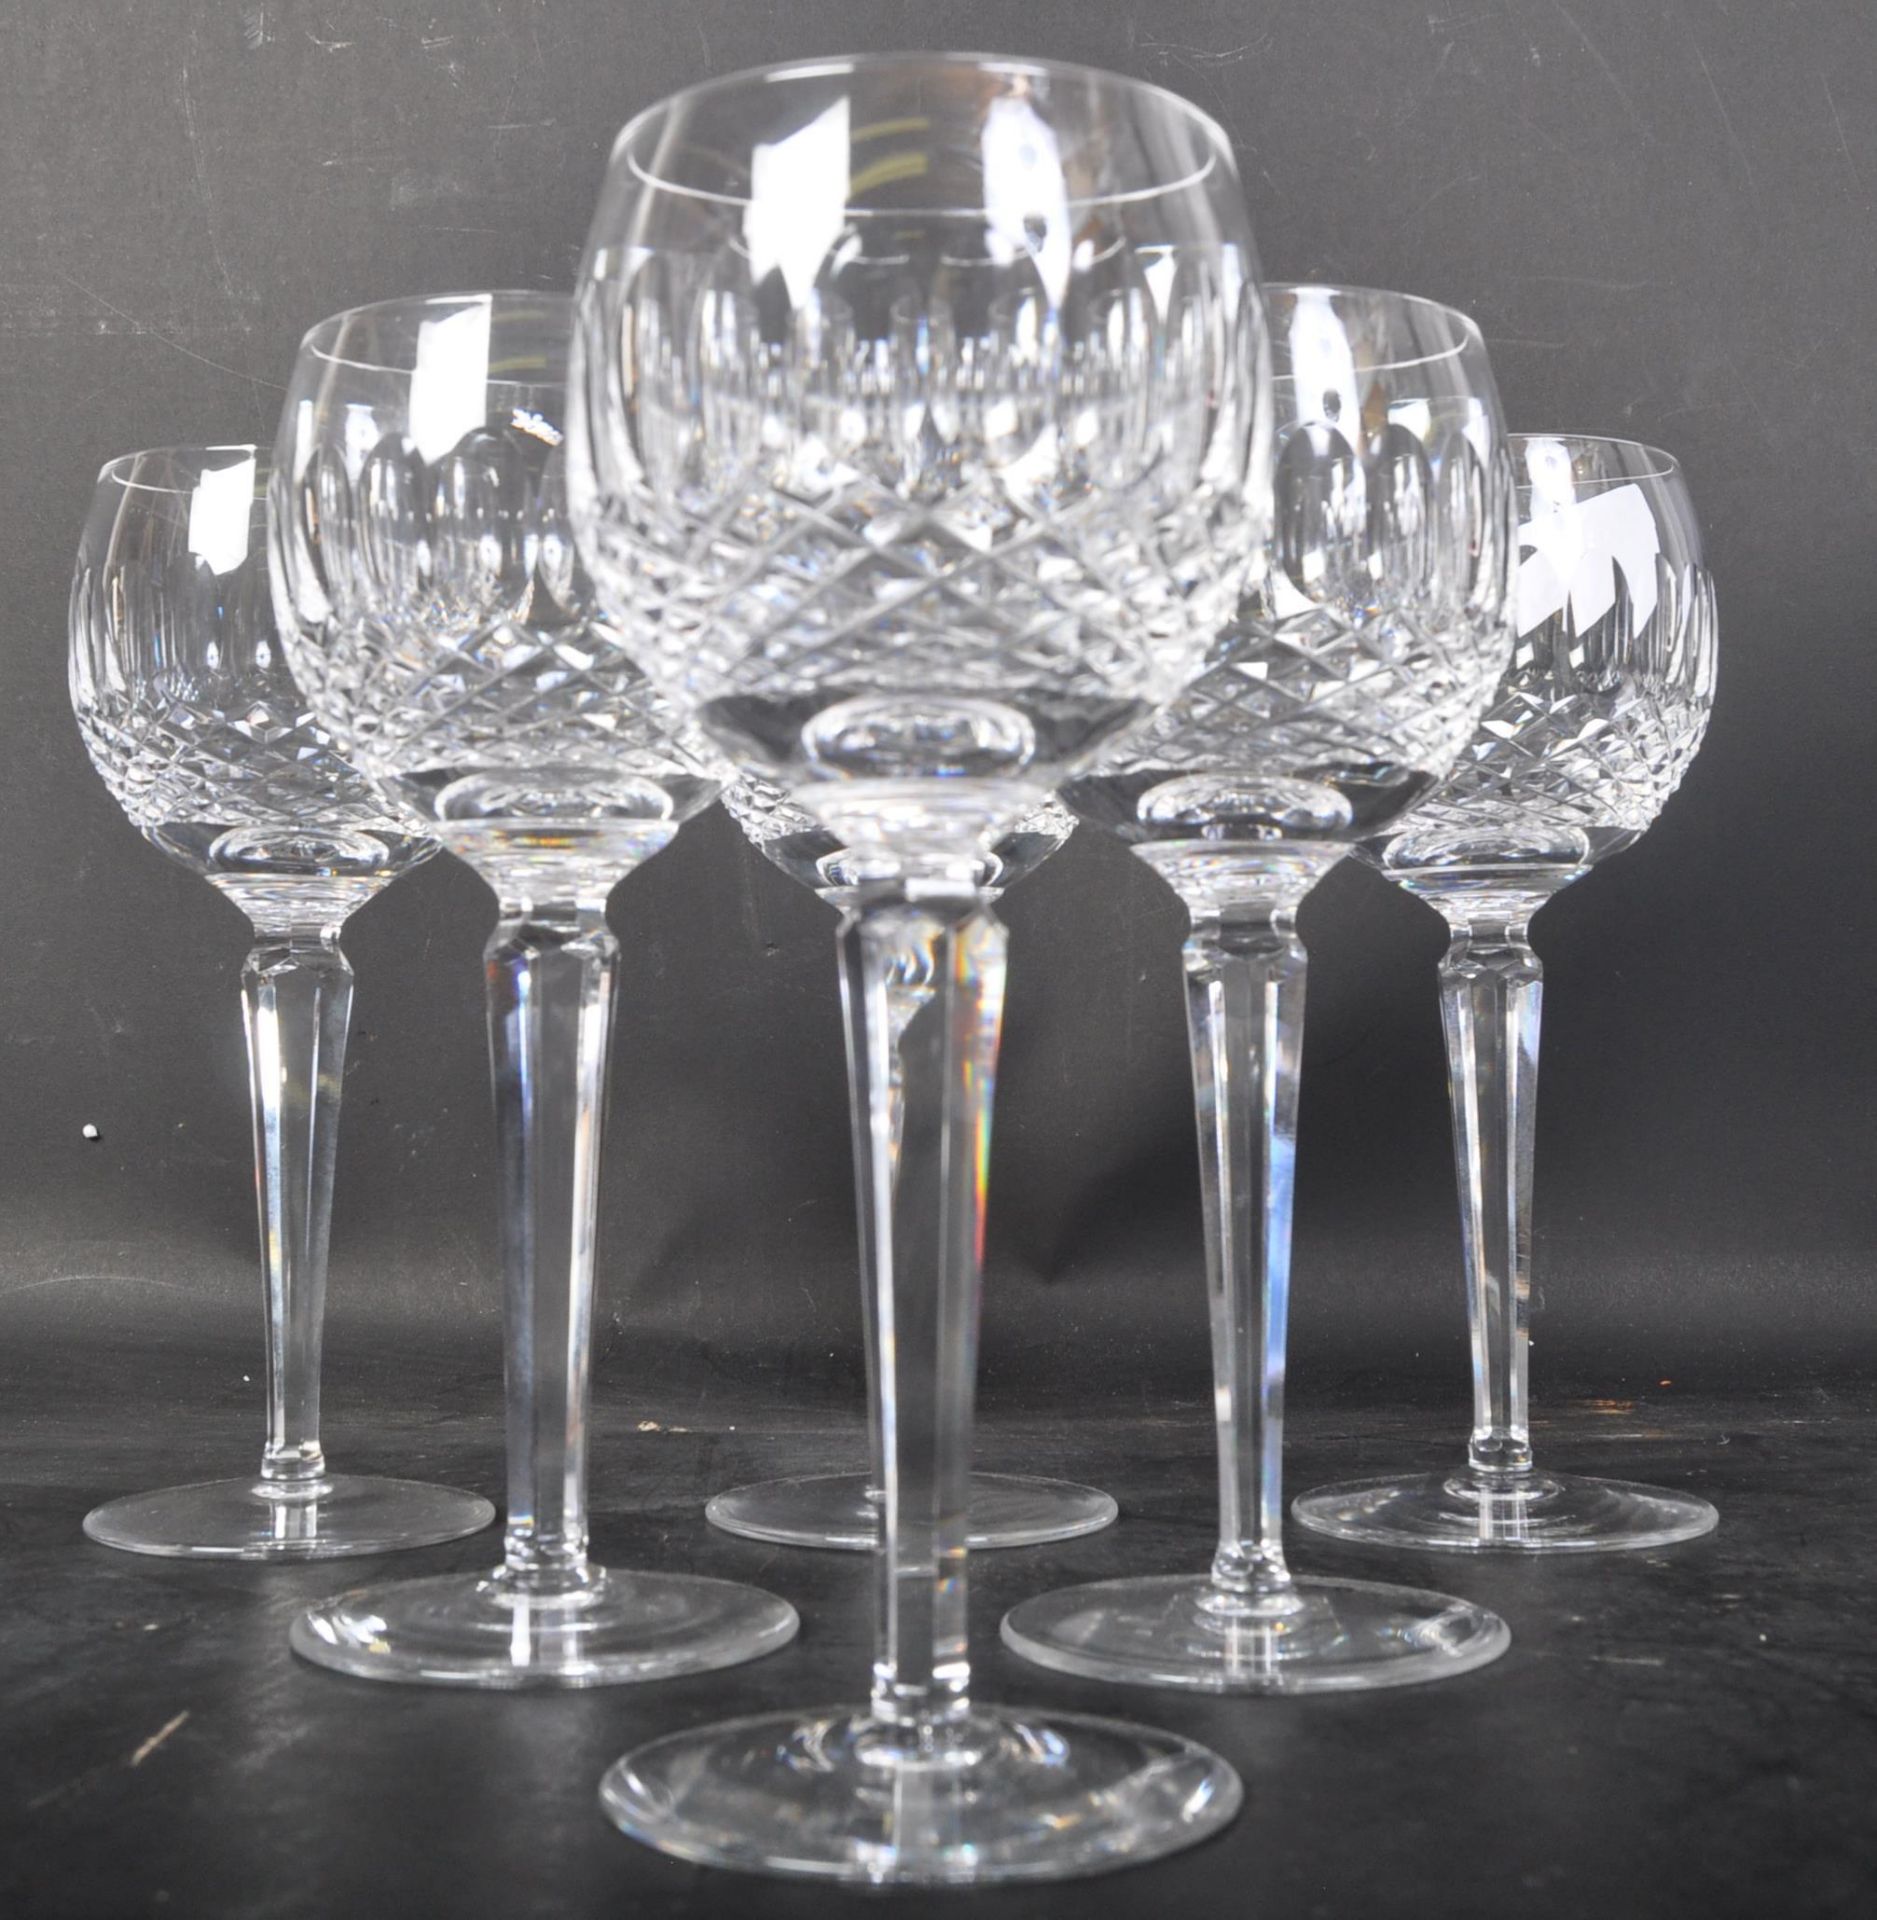 SIX VINTAGE WATERFORD CRYSTAL 'LISMORE' HOCK GLASSES - Image 2 of 5